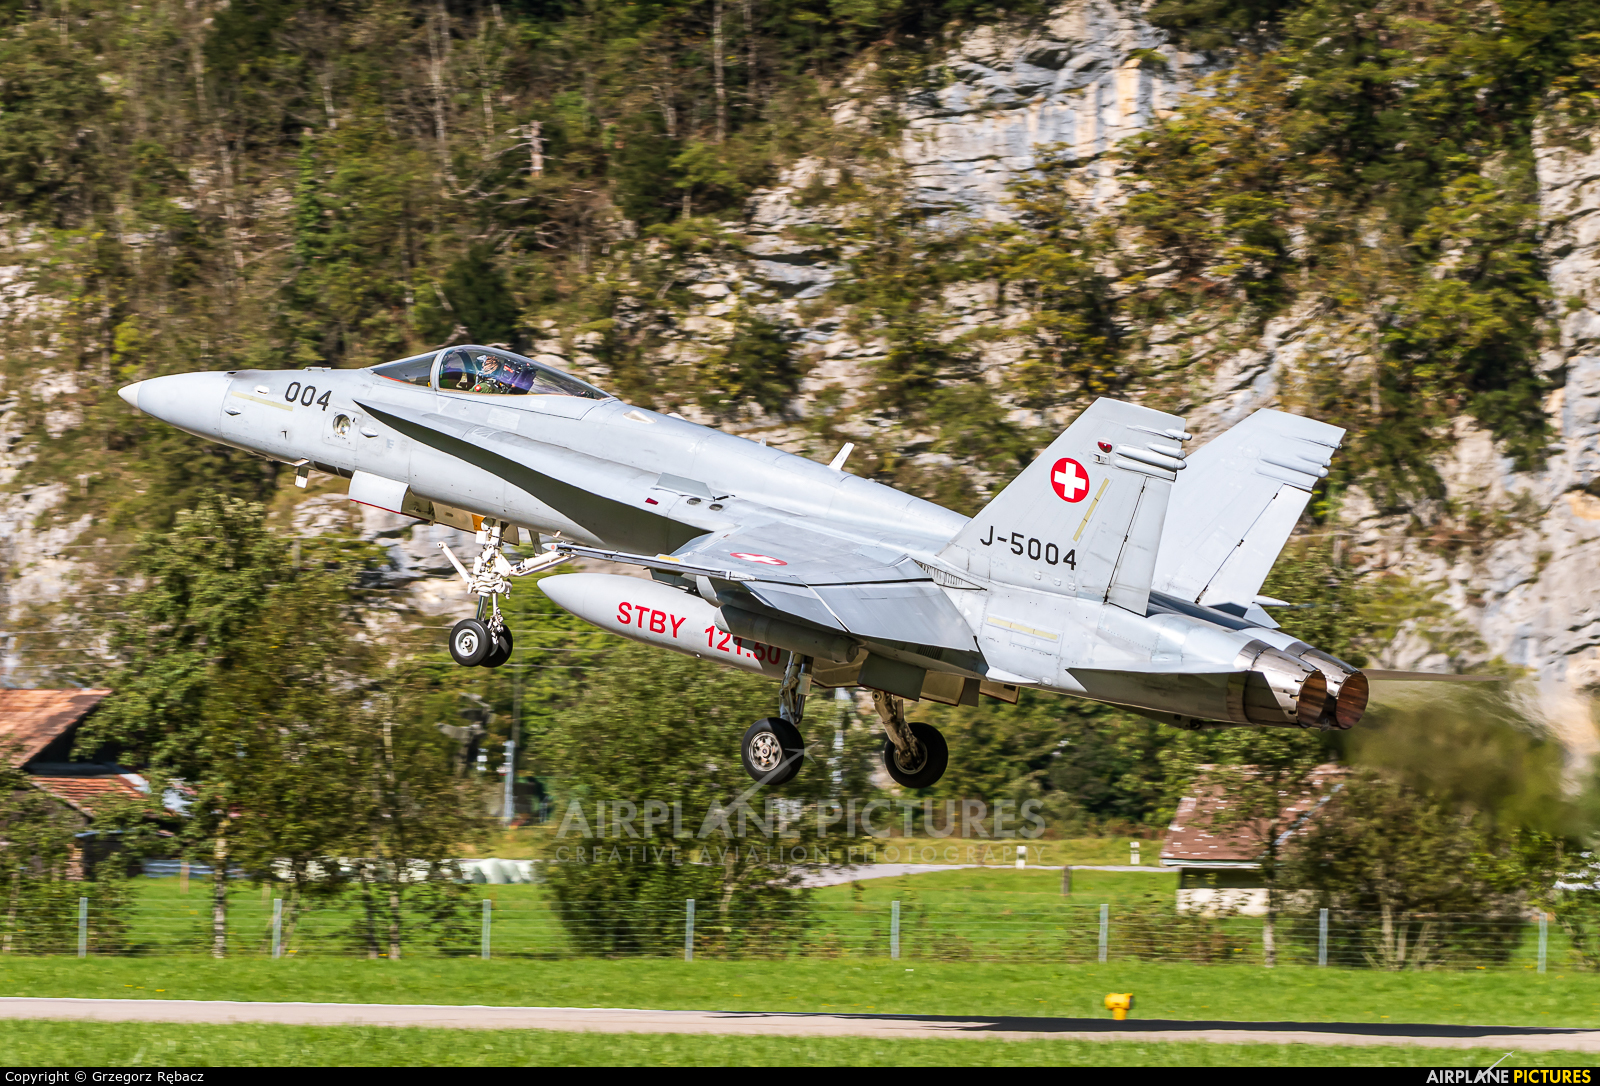 Switzerland - Air Force J-5004 aircraft at Meiringen